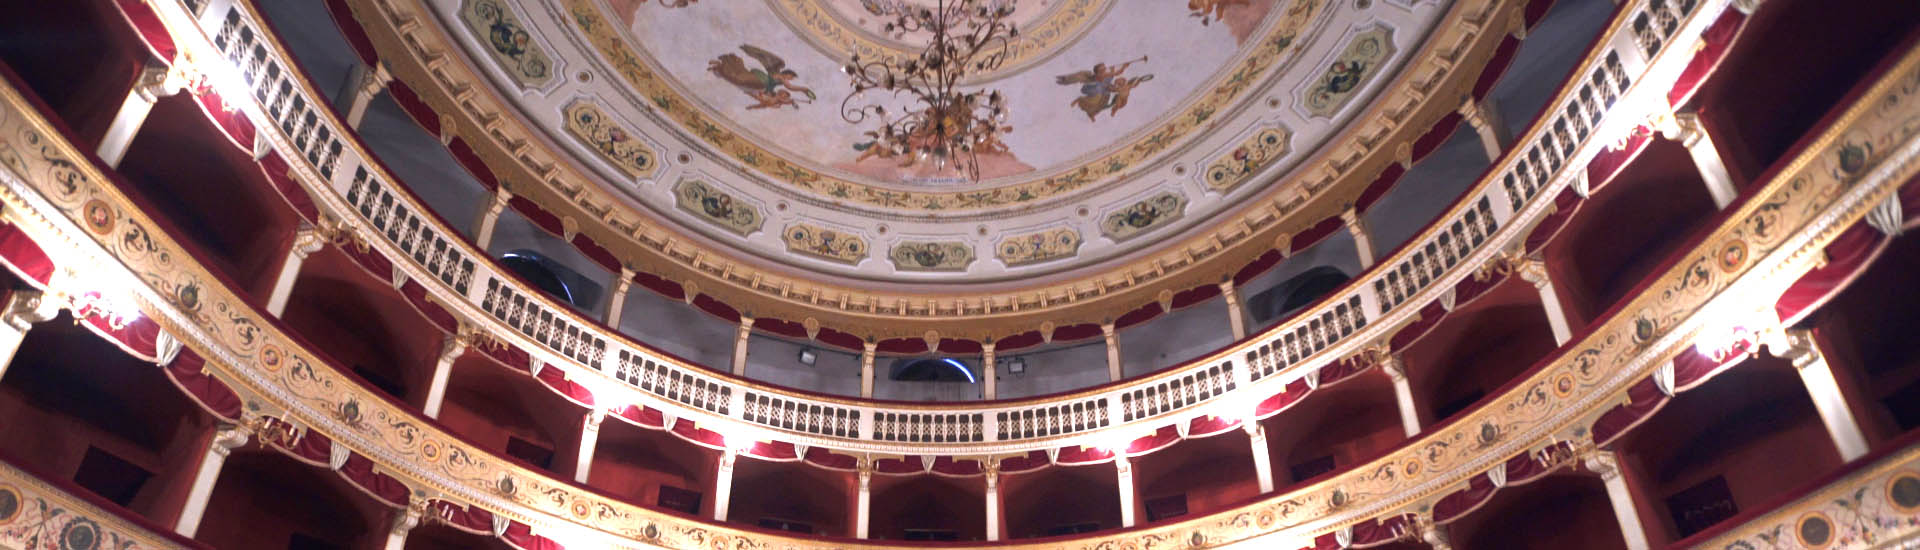 Pirandello theatre Agrigento